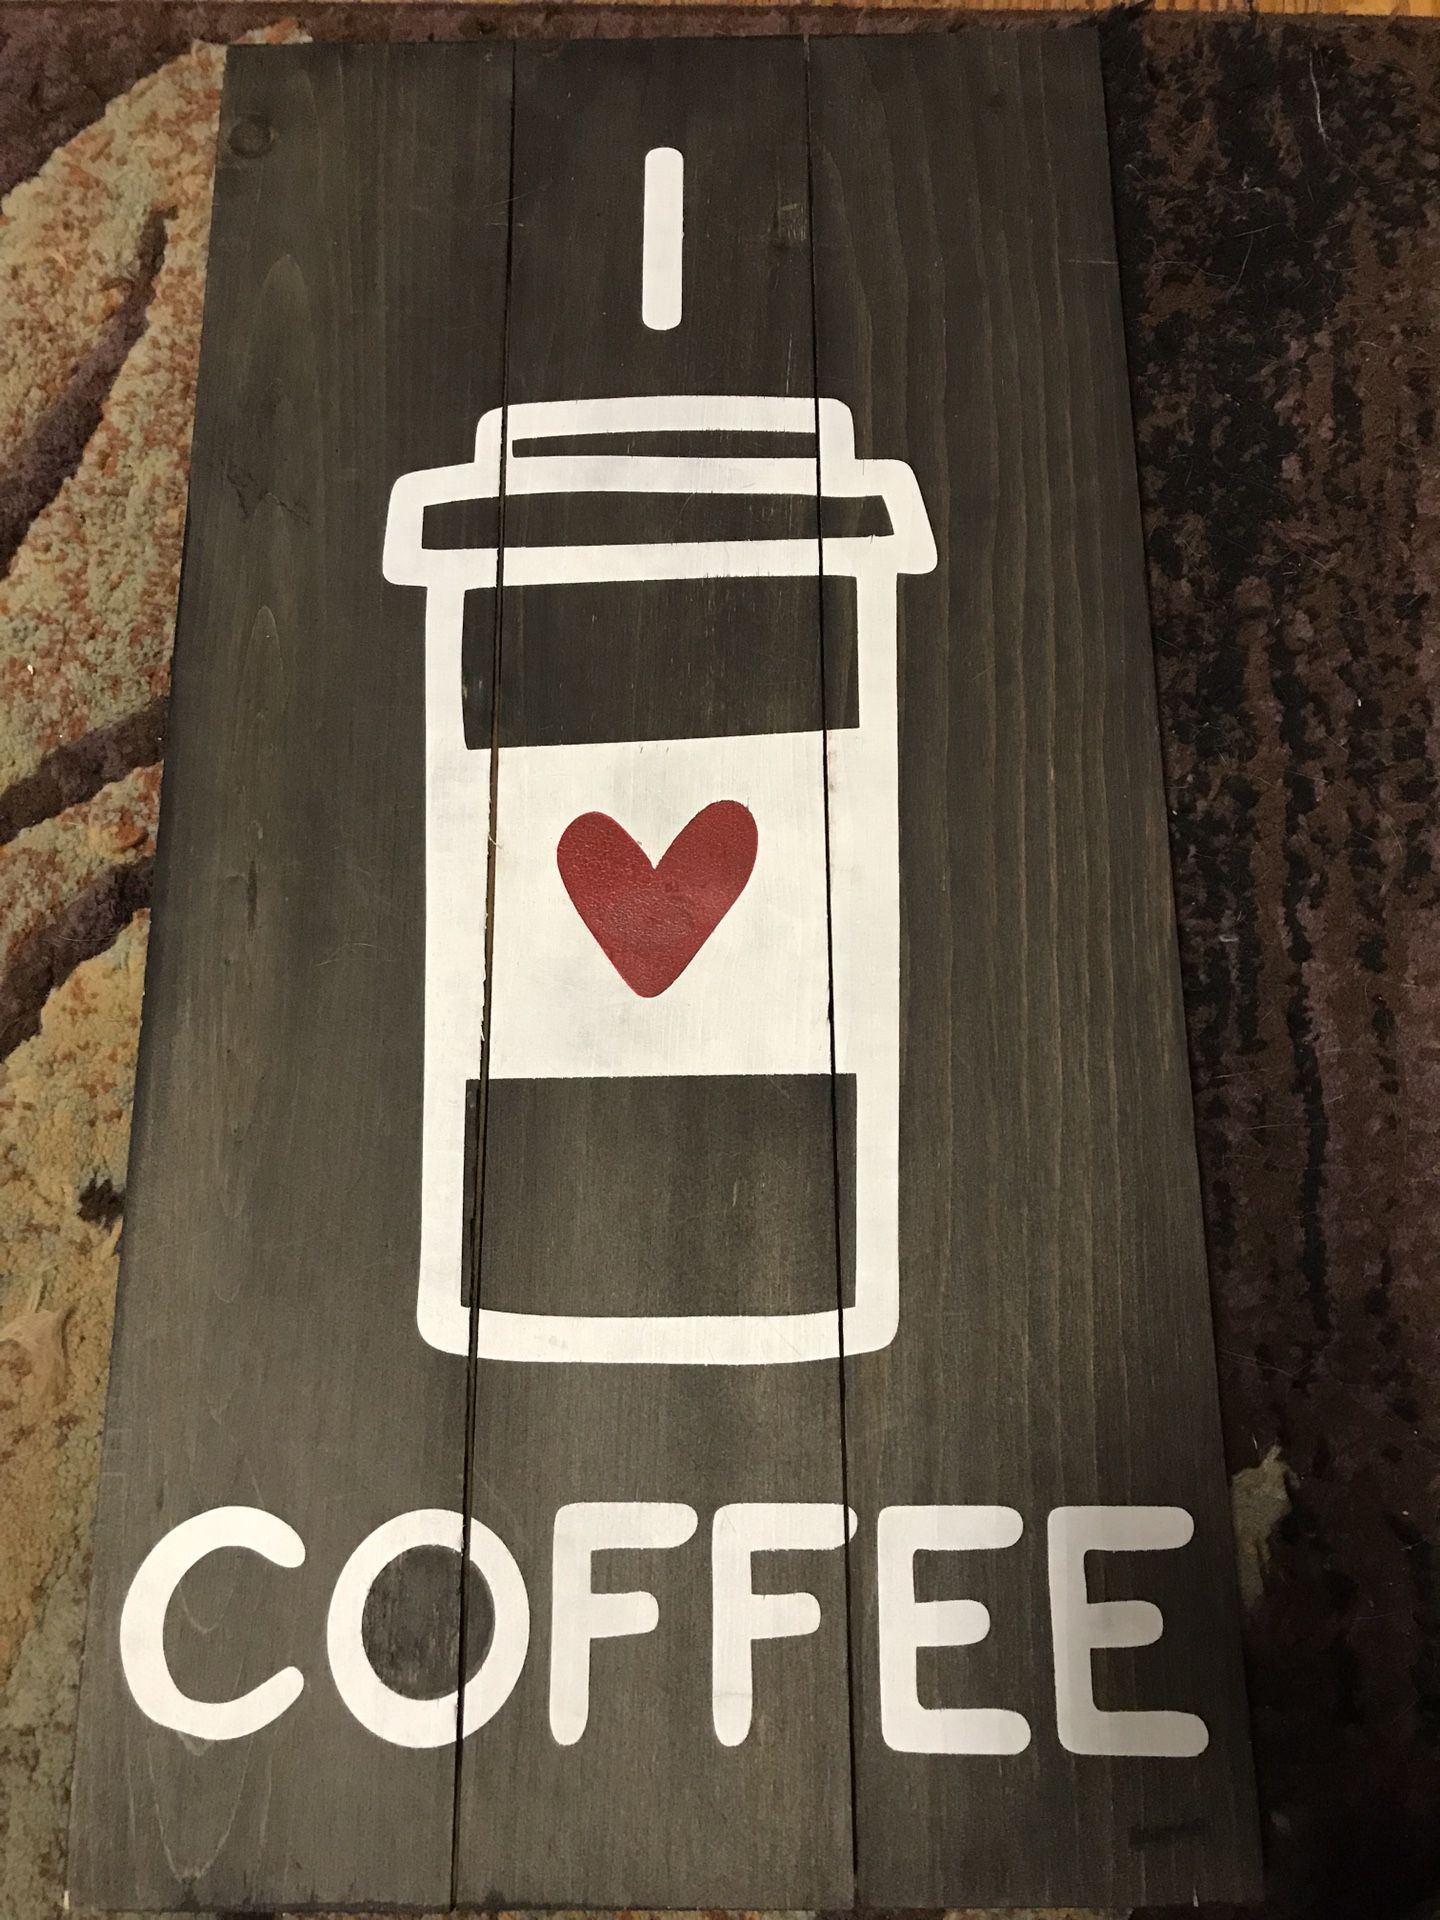 Coffee handmade sign